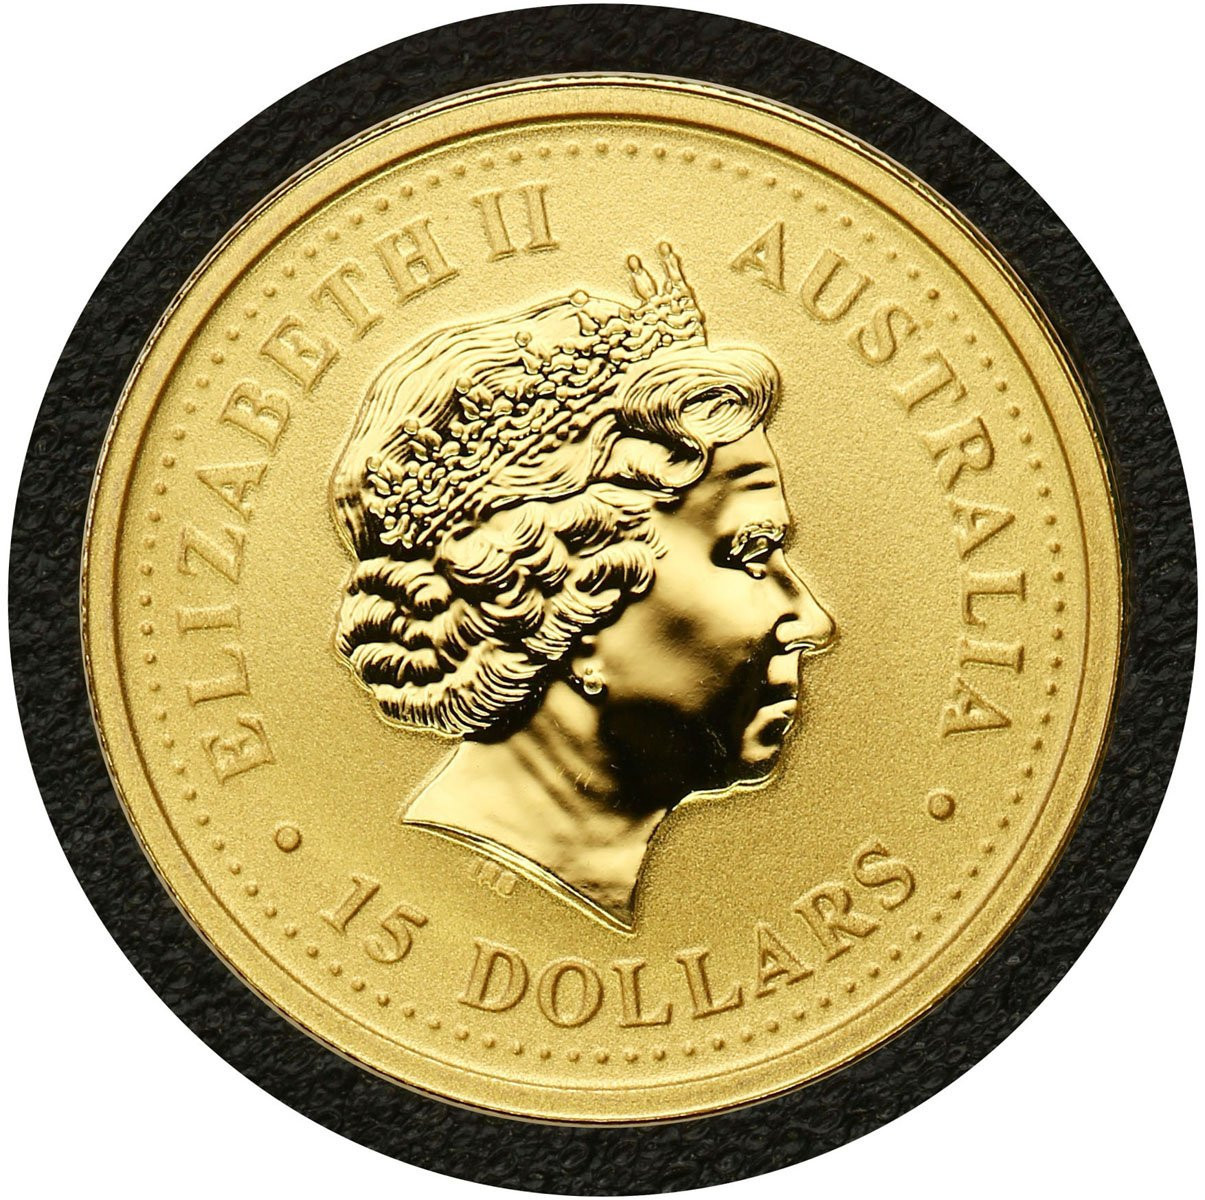 Australia. 15 $ dolarów 2006 Kangur - 1/10 uncji złota